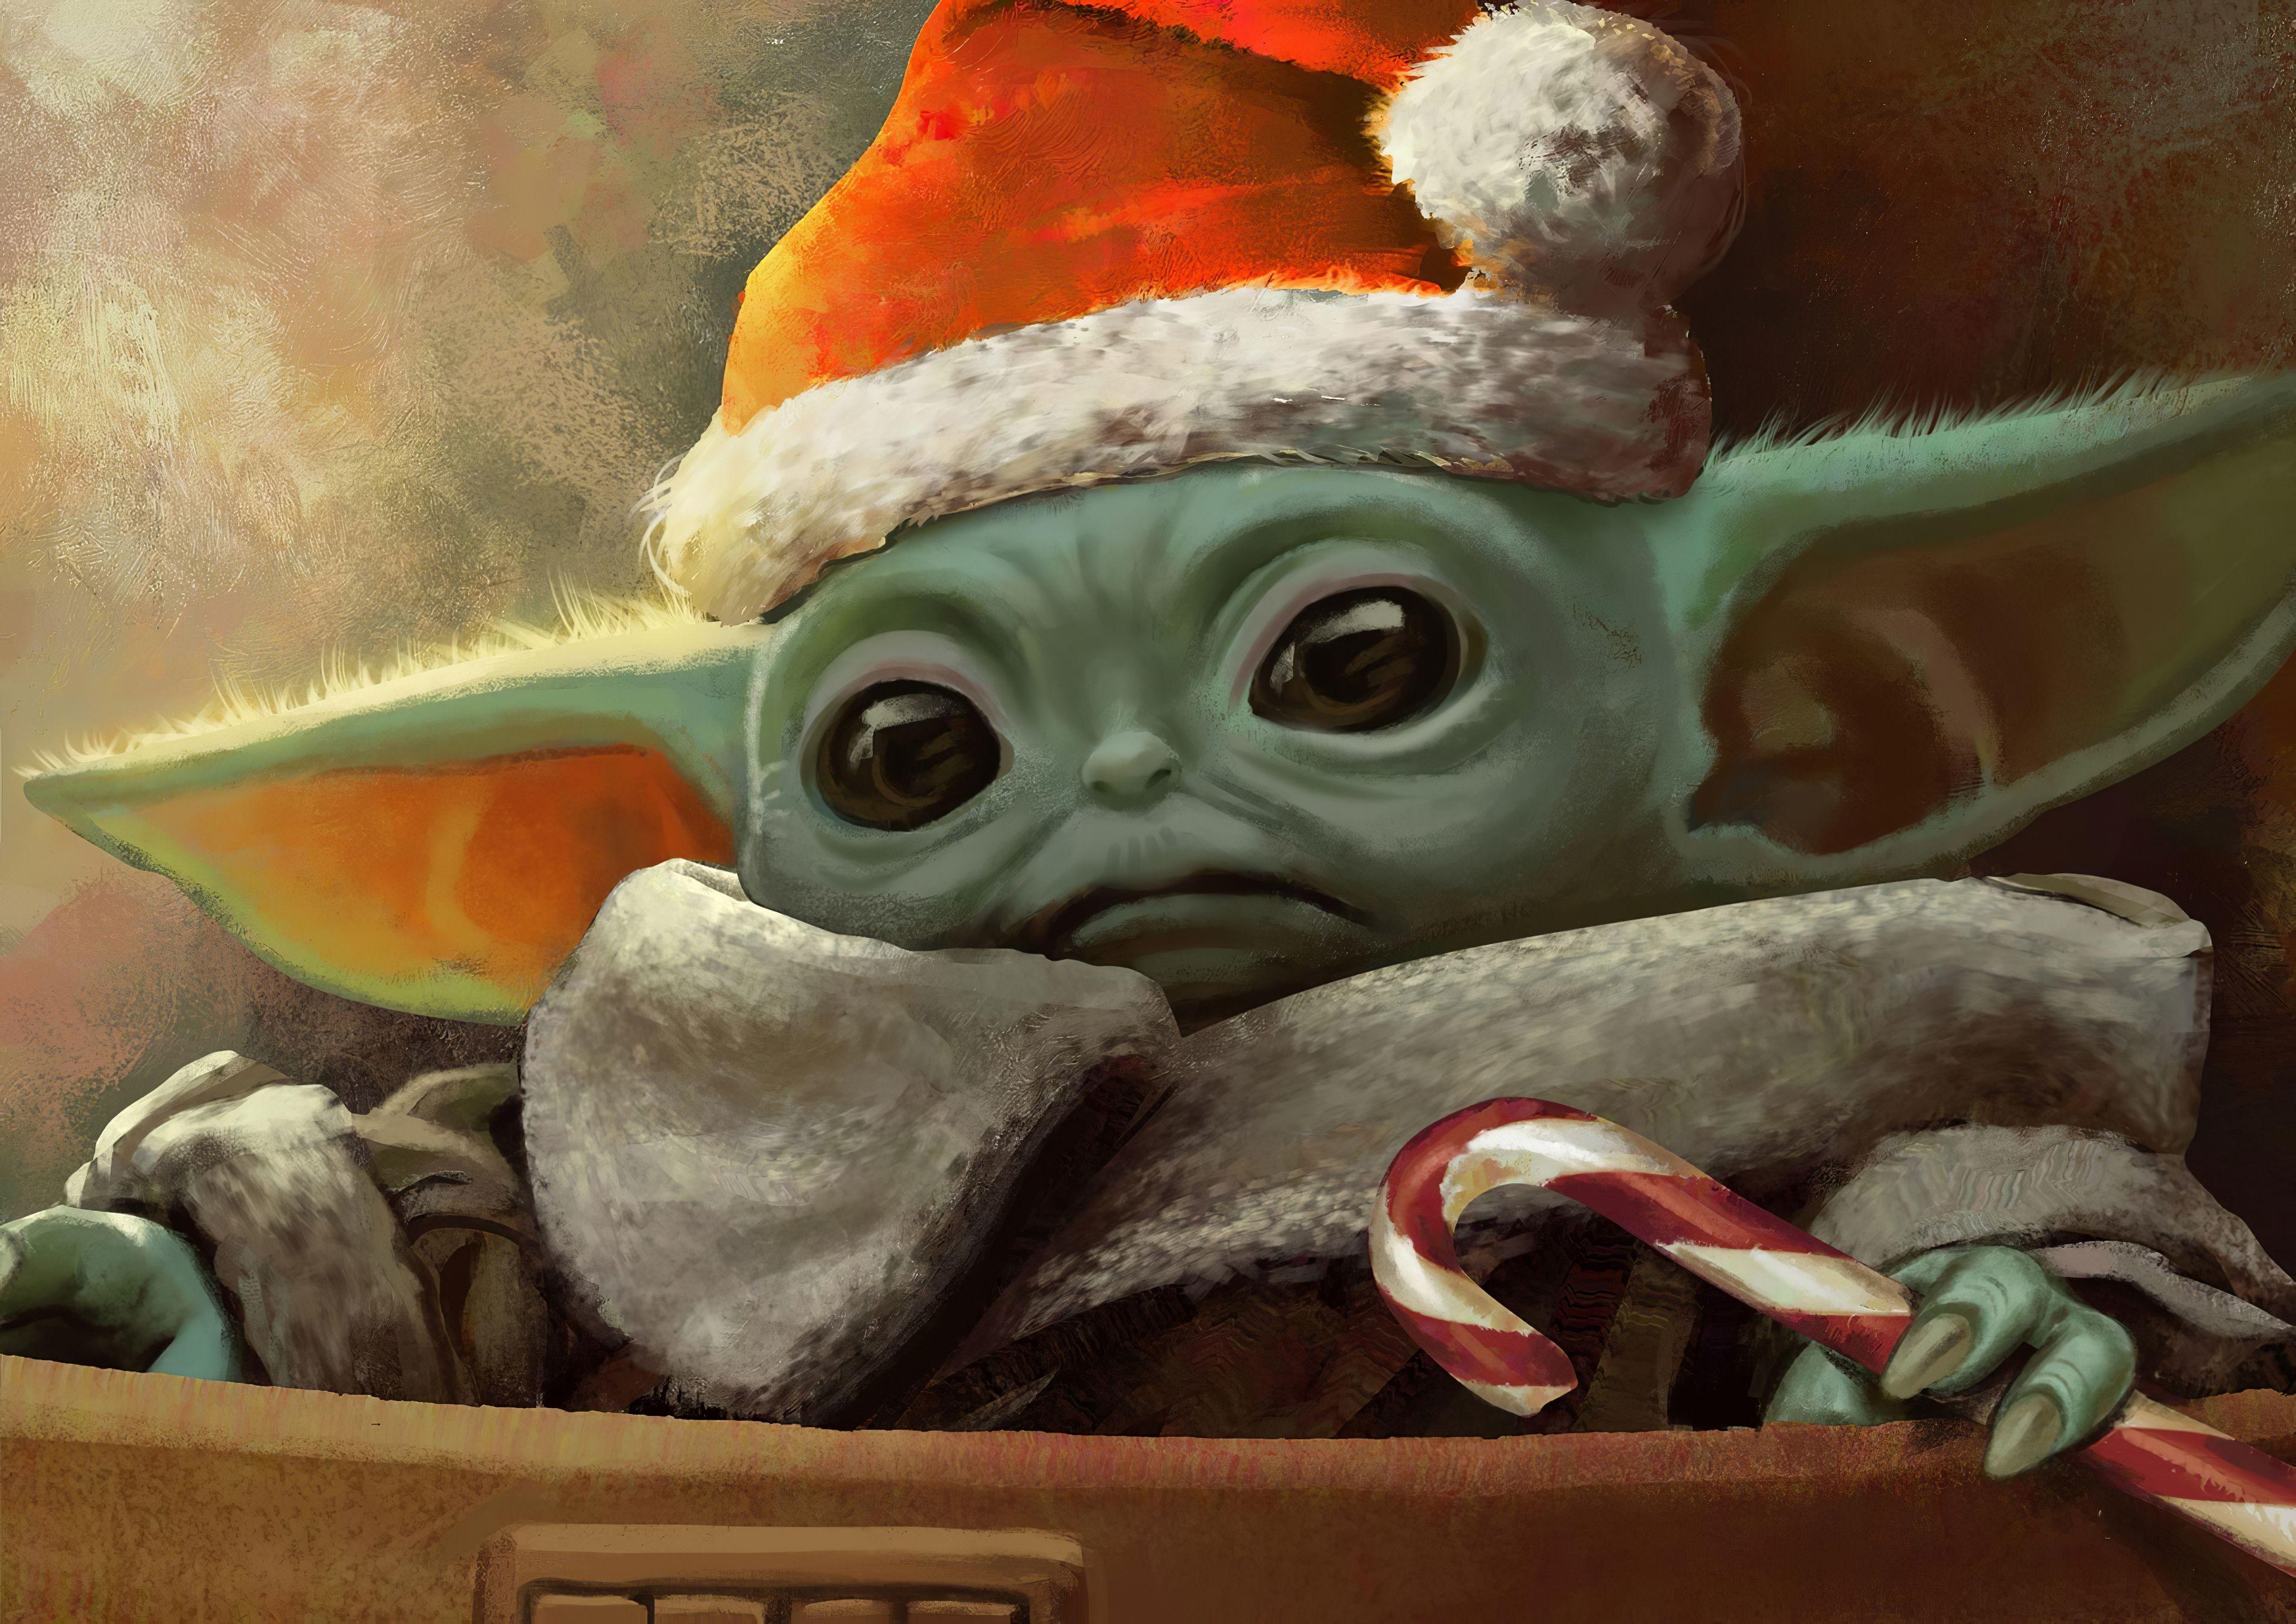 Hãy trang trí cho mùa giáng sinh với một bức tranh Hình nền Giáng sinh Baby Yoda miễn phí. Bức tranh này là một món quà tuyệt vời cho những ai yêu thích Star Wars và Baby Yoda. Hãy tận hưởng cảm giác thư giãn và vui vẻ khi tạo ra một bức tranh tuyệt đẹp với hình ảnh Baby Yoda trong ngày Giáng sinh.